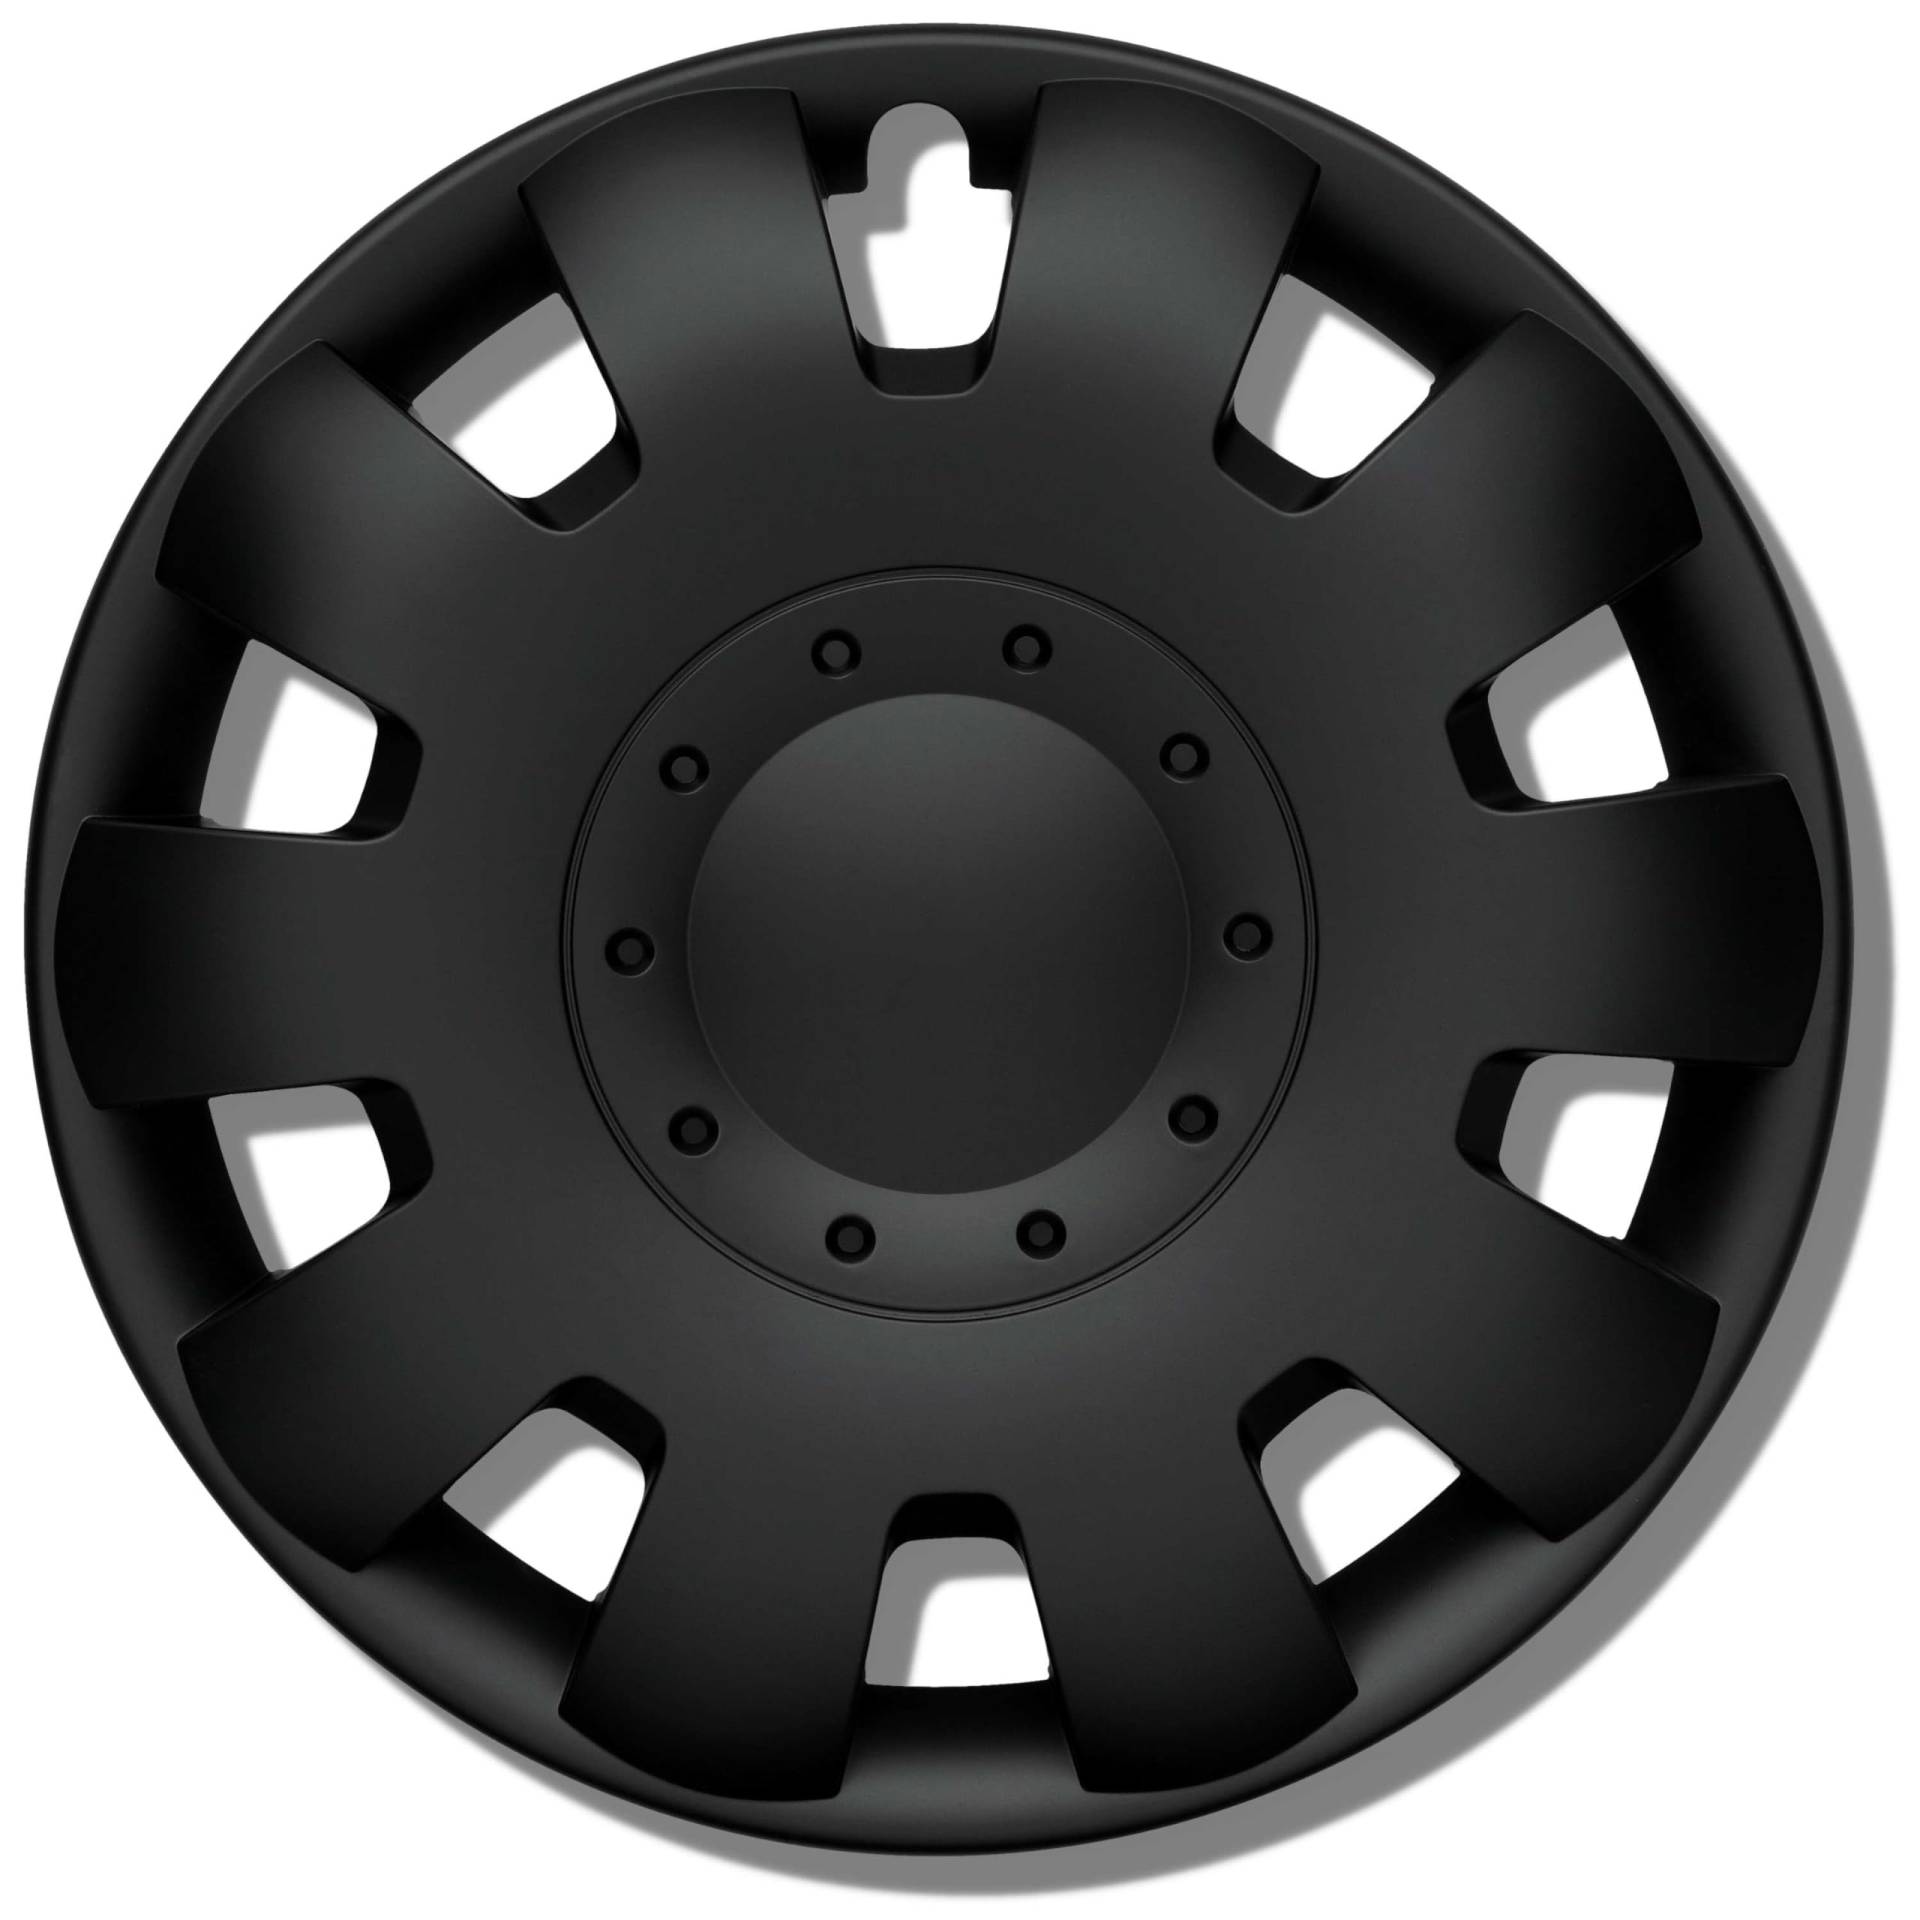 Radkappen 15 Zoll schwarz matt Erstausrüster Qualität aus robustem Kunststoff Neptun 4 Stück Radzierblenden für Stahlräder - Radblenden 4er Set für Stahlfelgen - Europäische Produktion von Kuglo